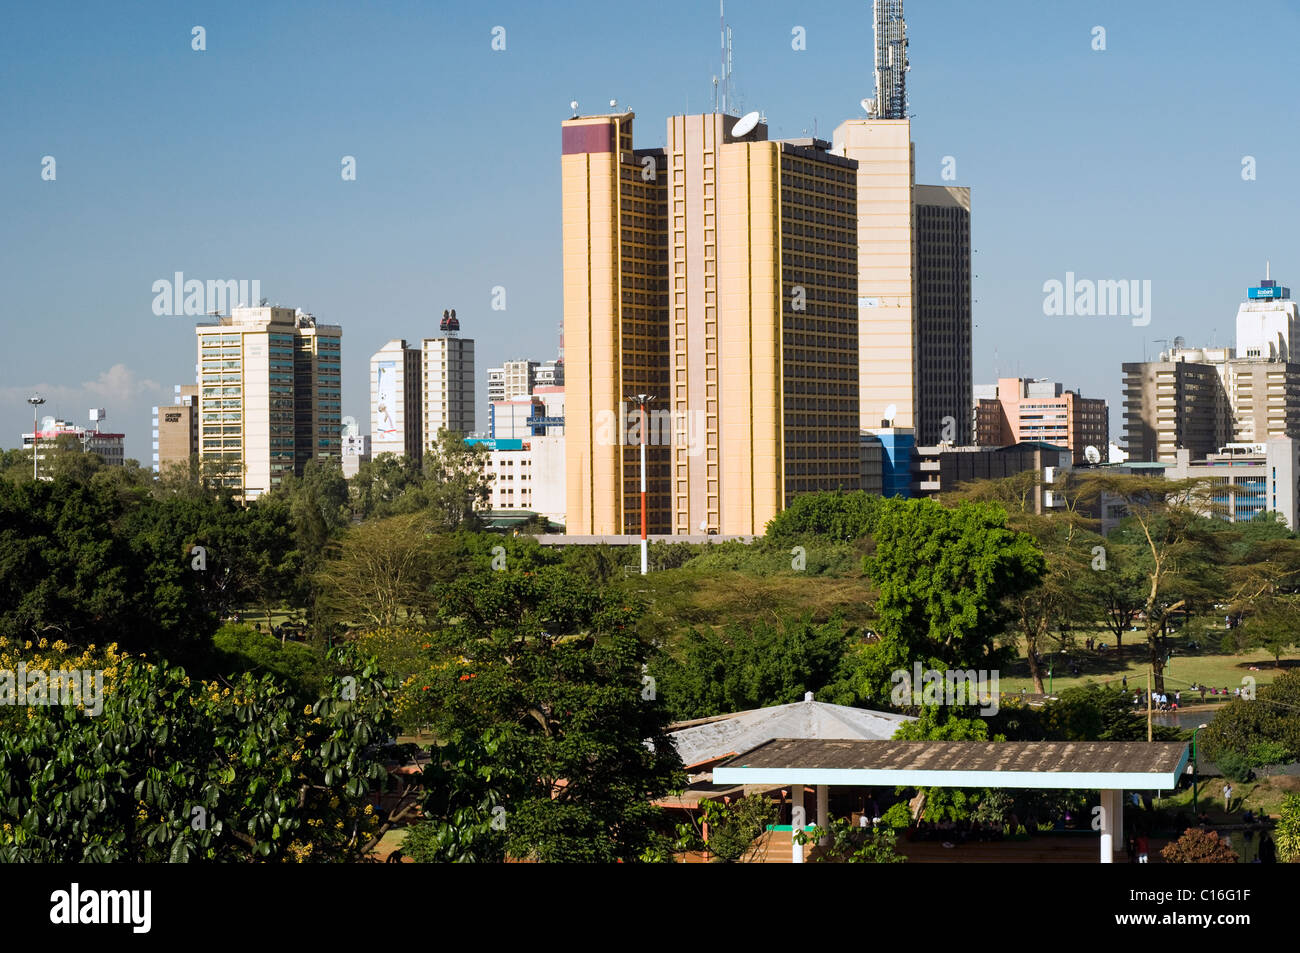 Nairobi skyline from Nairobi Hill Stock Photo - Alamy